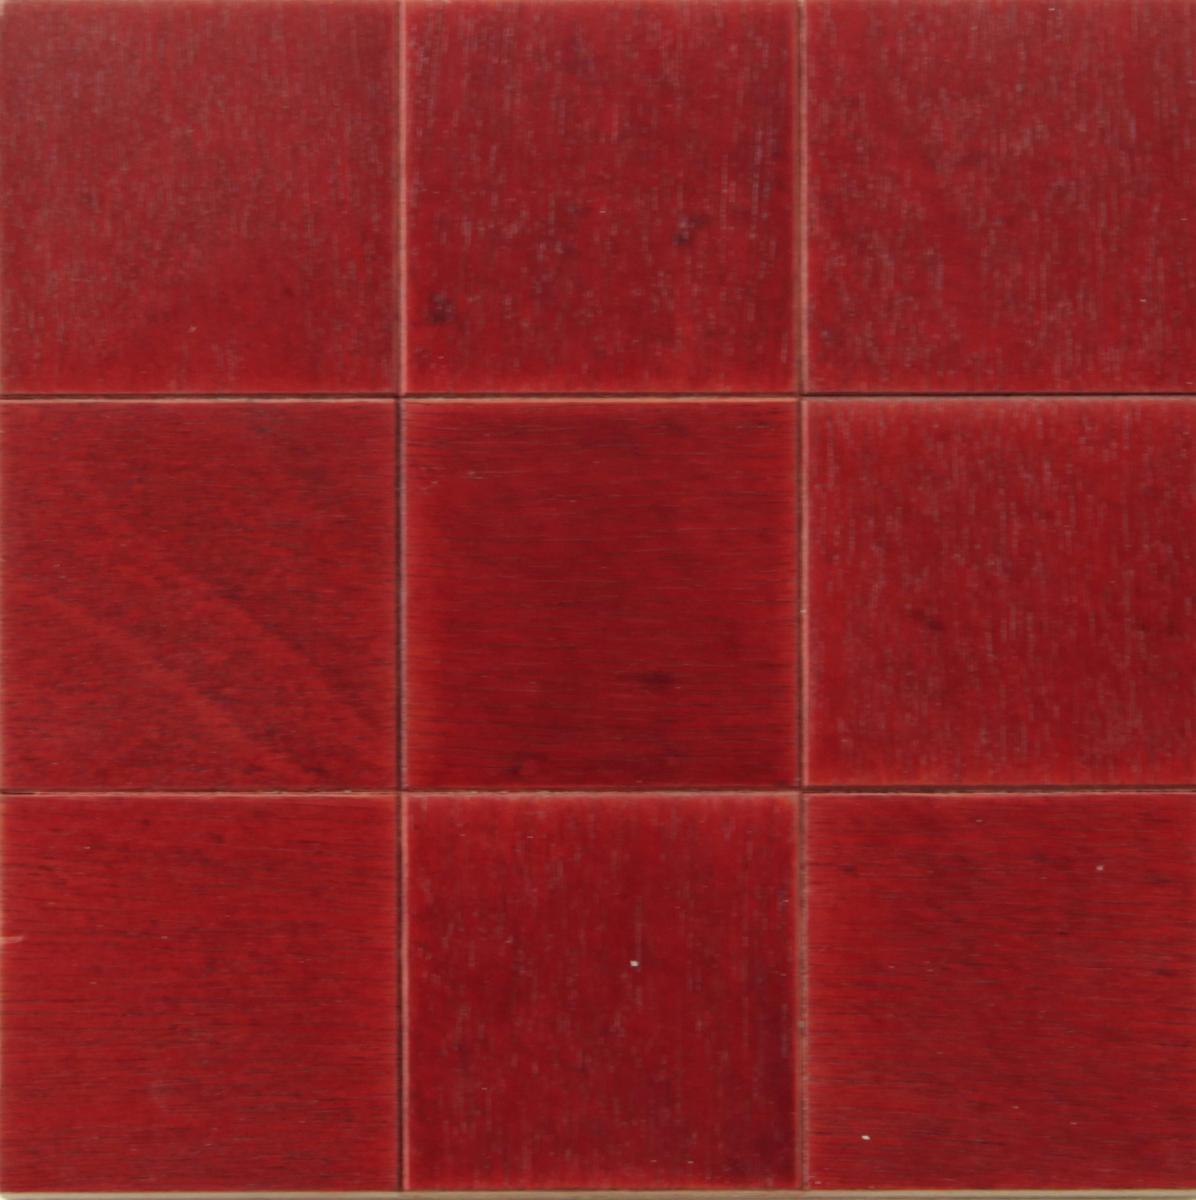 Gottfried Honegger - Holzrelief in Rot, 56800-10530, Van Ham Kunstauktionen